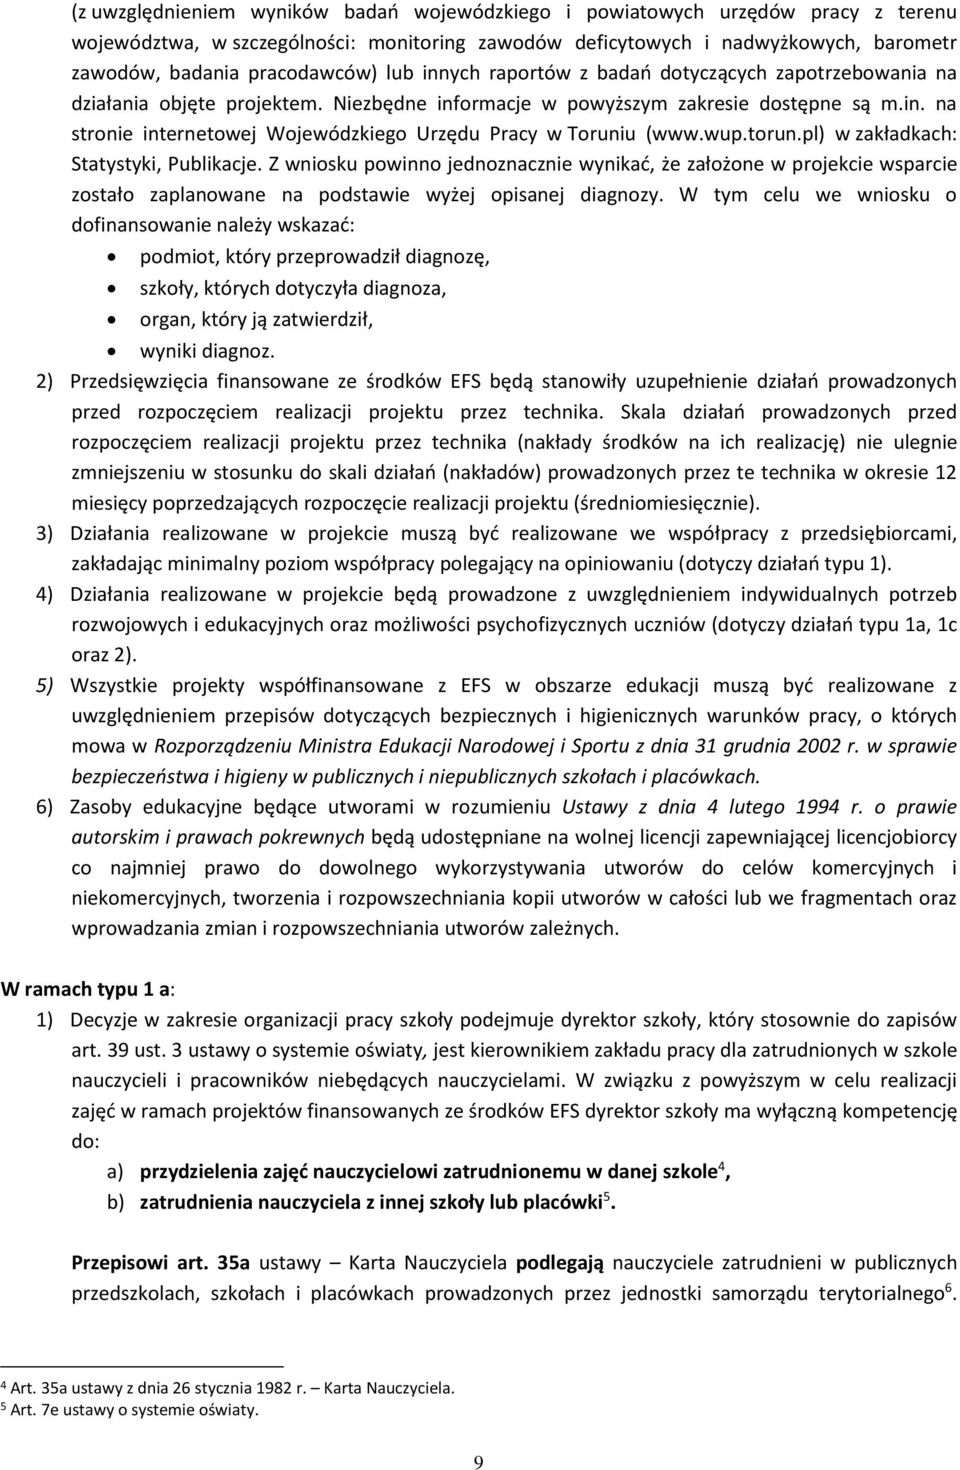 wup.torun.pl) w zakładkach: Statystyki, Publikacje. Z wniosku powinno jednoznacznie wynikać, że założone w projekcie wsparcie zostało zaplanowane na podstawie wyżej opisanej diagnozy.